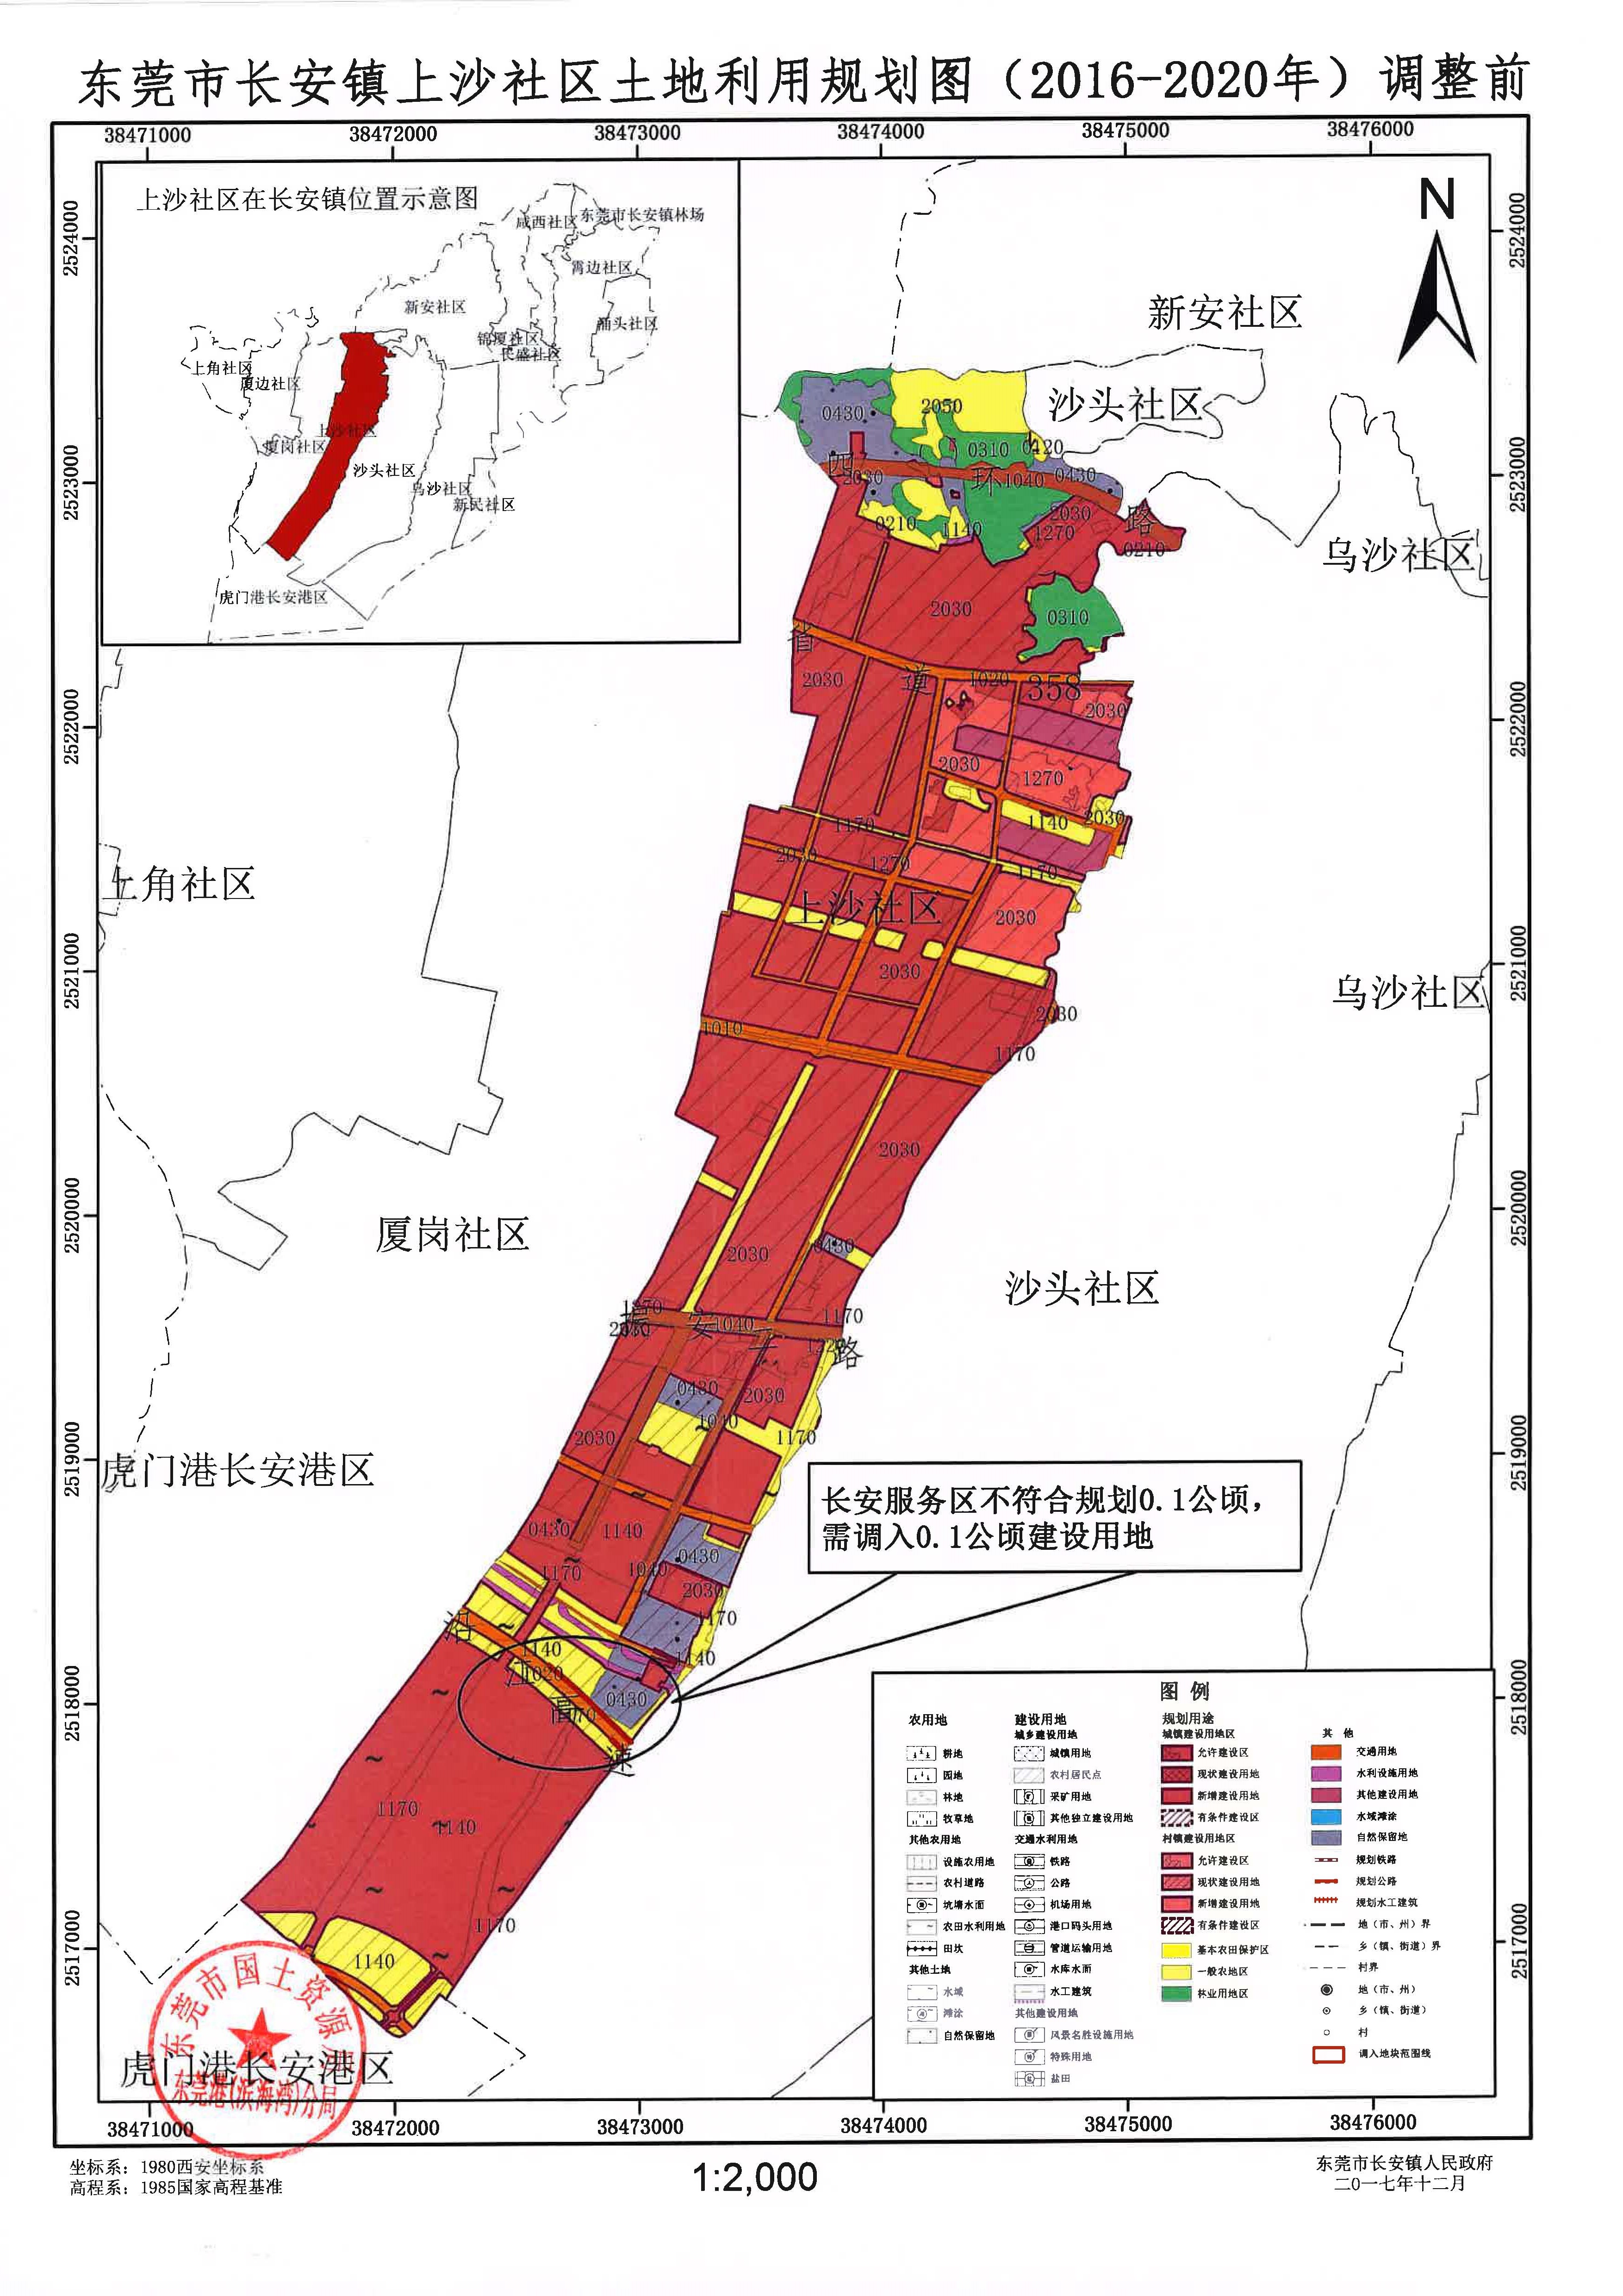 东莞市长安镇上沙社区土地利用规划20162020的公告